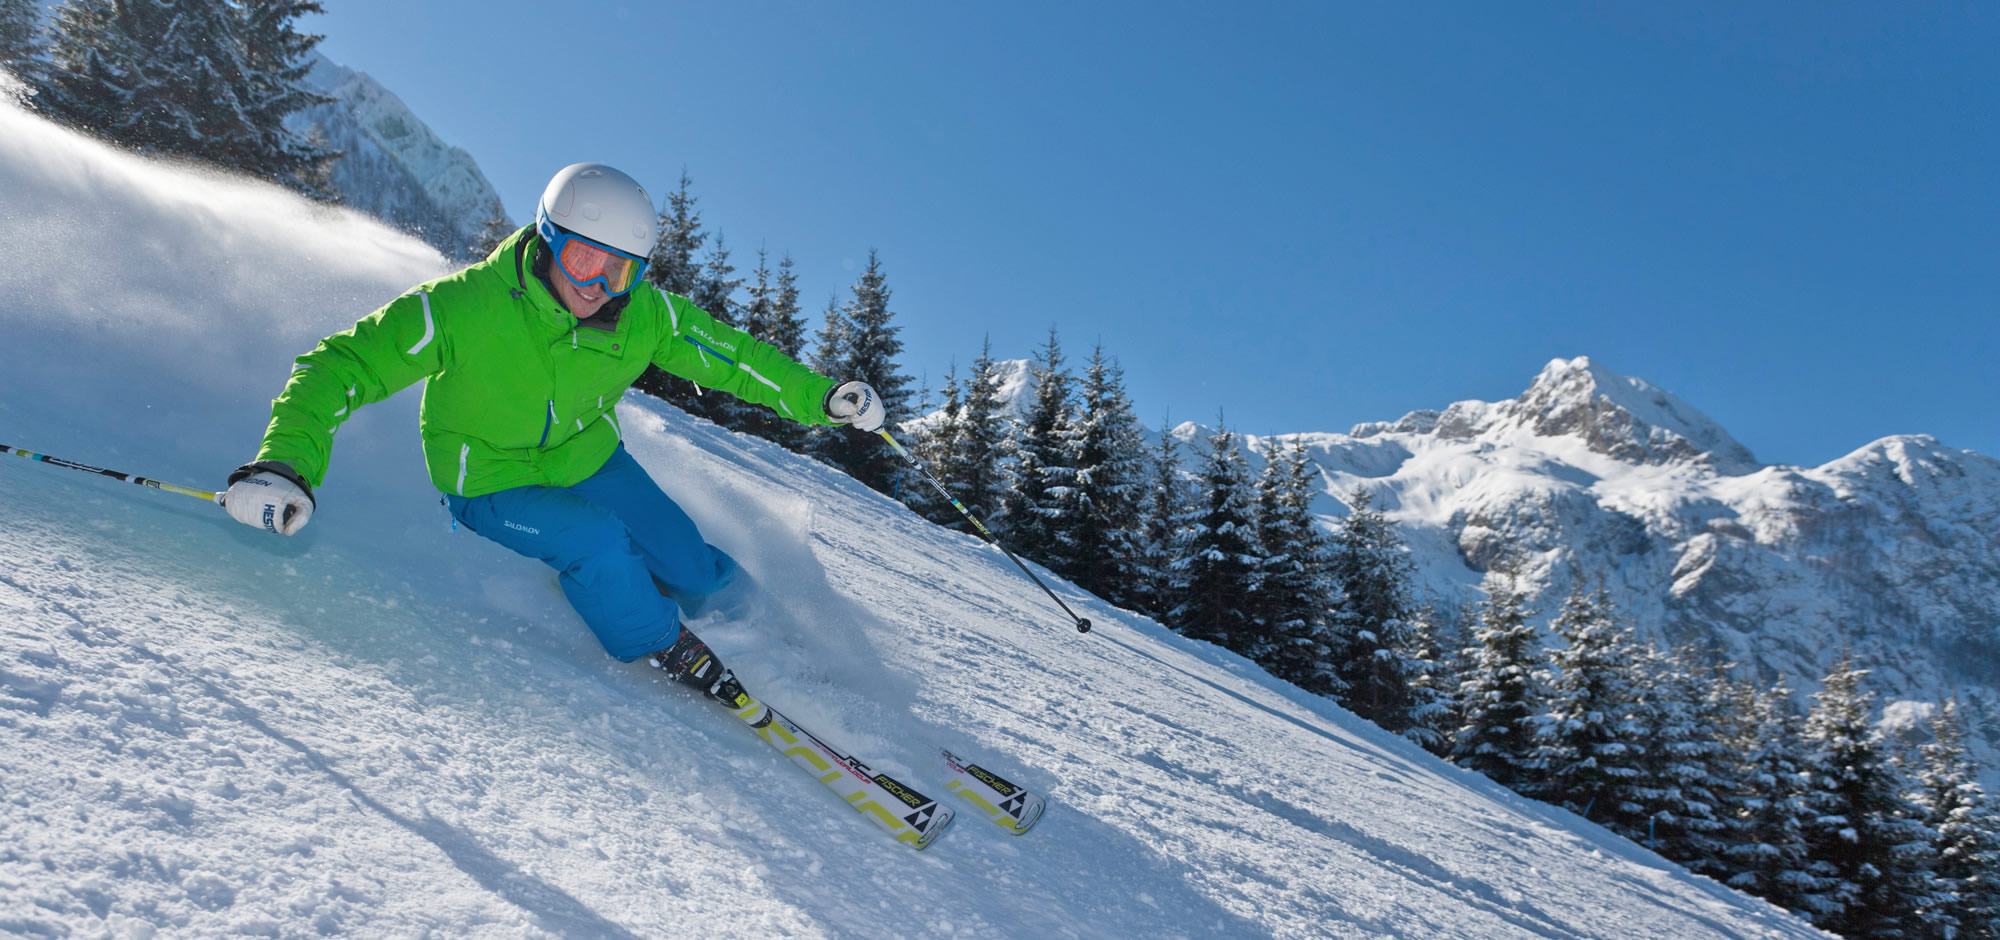 Skiurlaub in Abtenau nahe dem Skigebiet Dachtein West, Skifahren am Karkogel oder im Postalm-Gebiet mit tollen Langlaufoipen